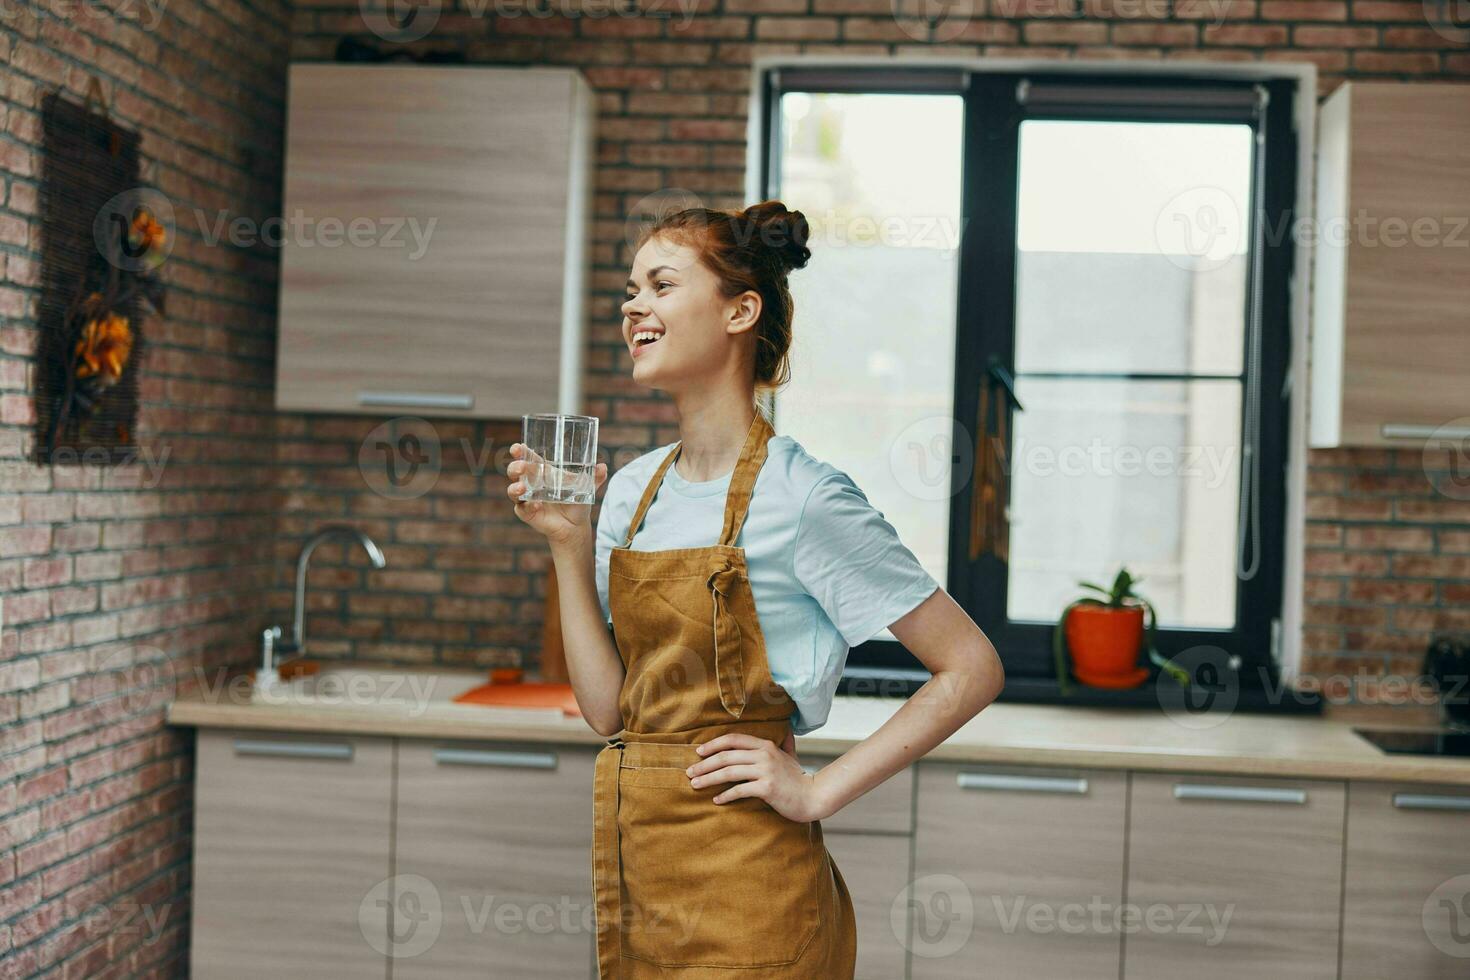 mujer en el delantal cocina ama de casa en la cocina Fotografía de